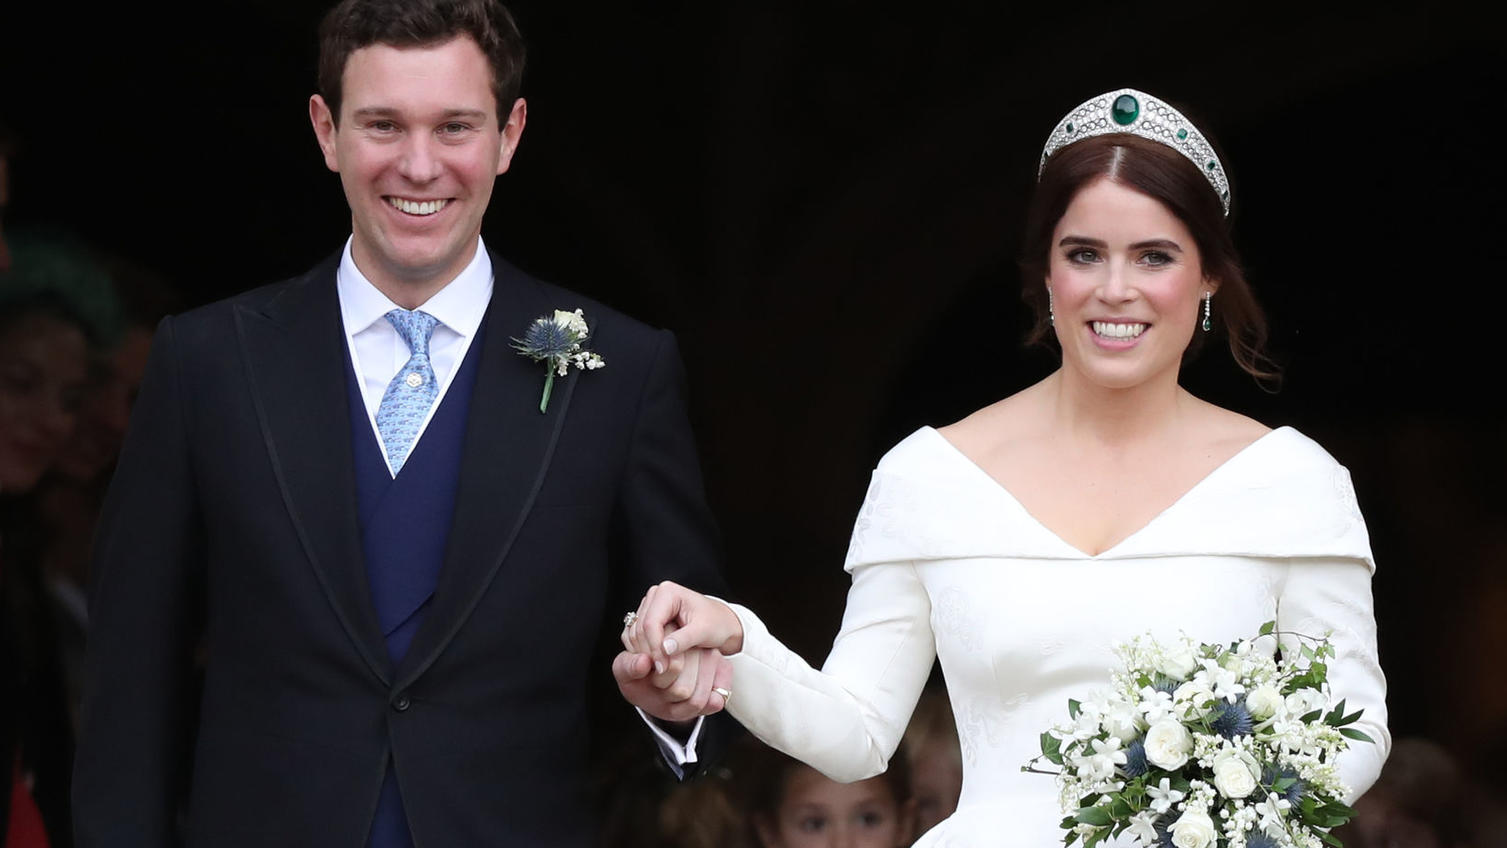 Die Hochzeit von Prinzessin Eugenie und Jack Brooksbank am 12. Oktober 2018.